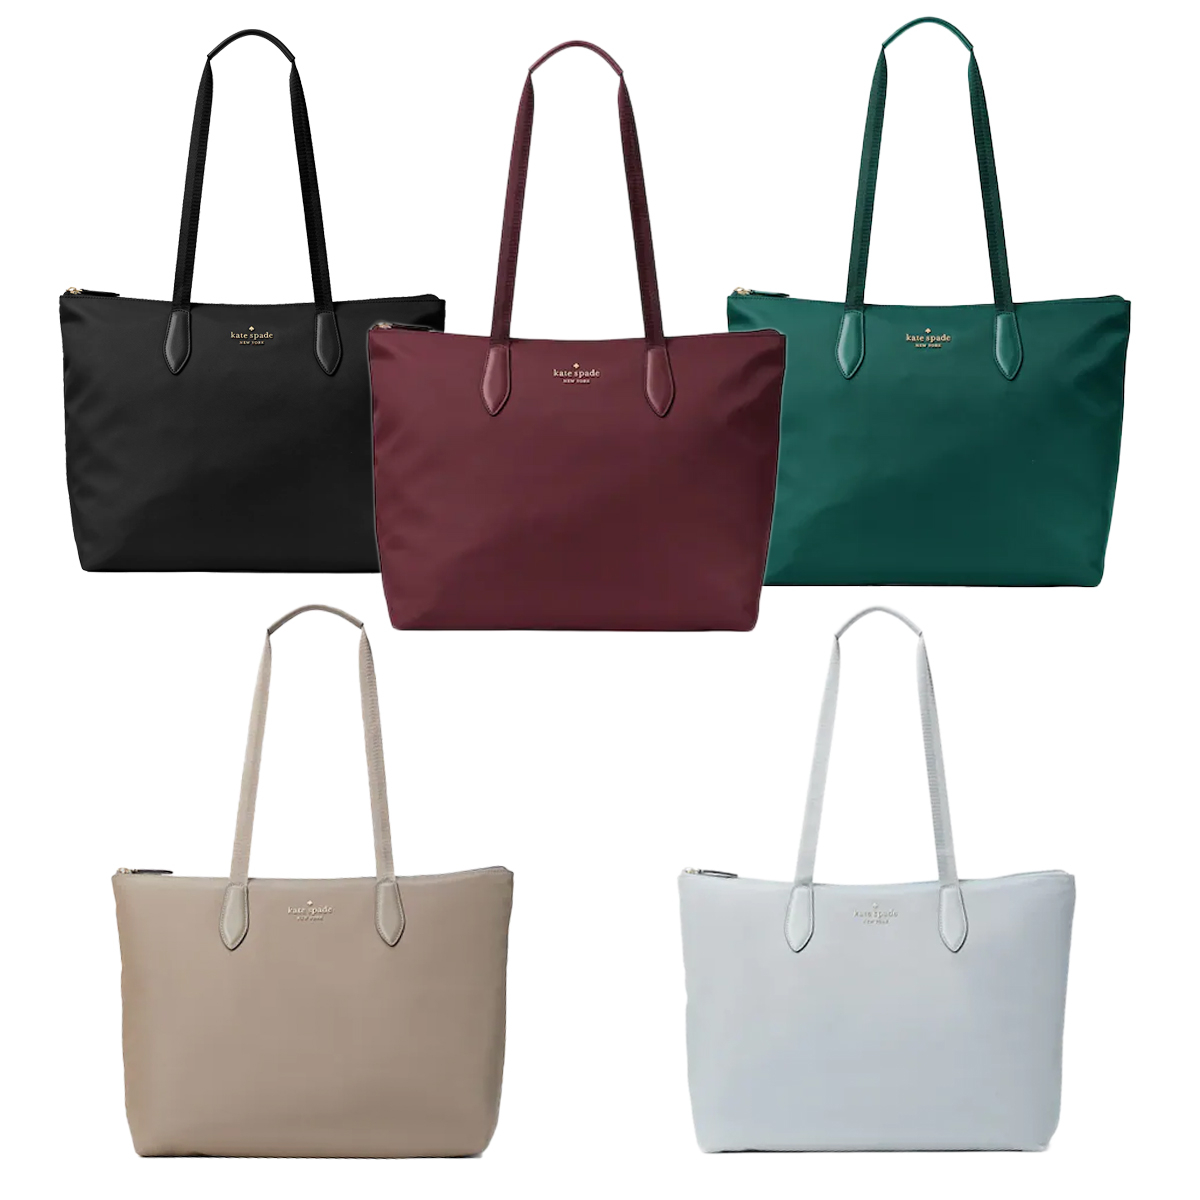 Women's Tote Bags at Kate Spade - Bags